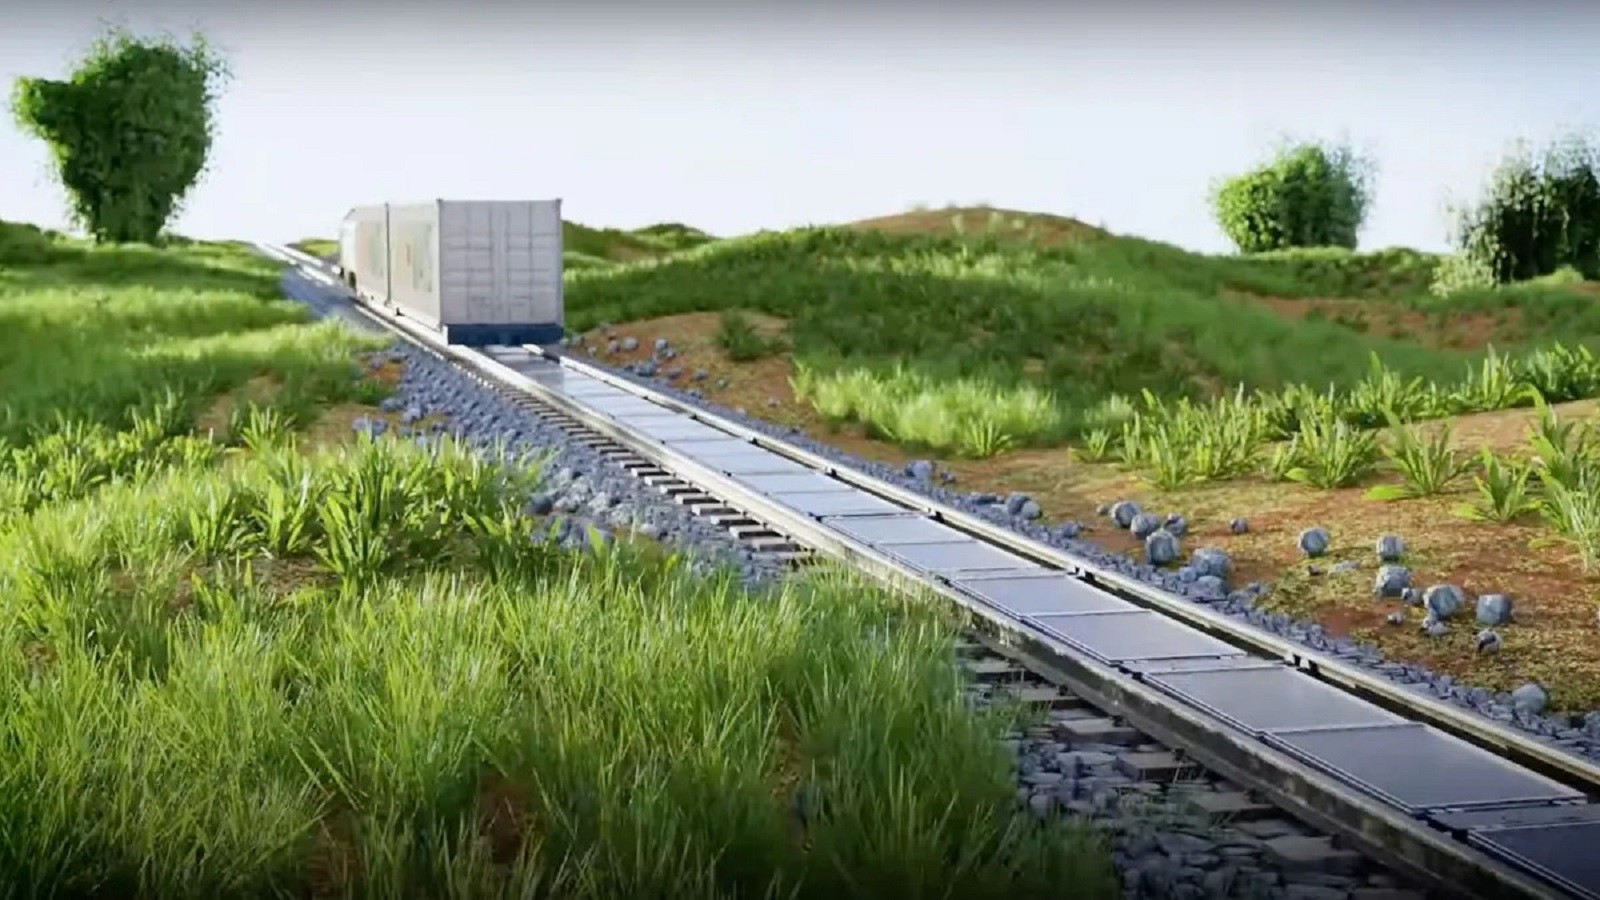 Tory kolejowe dostarczą energii. Wystarczy położyć na nich fotowoltaikę